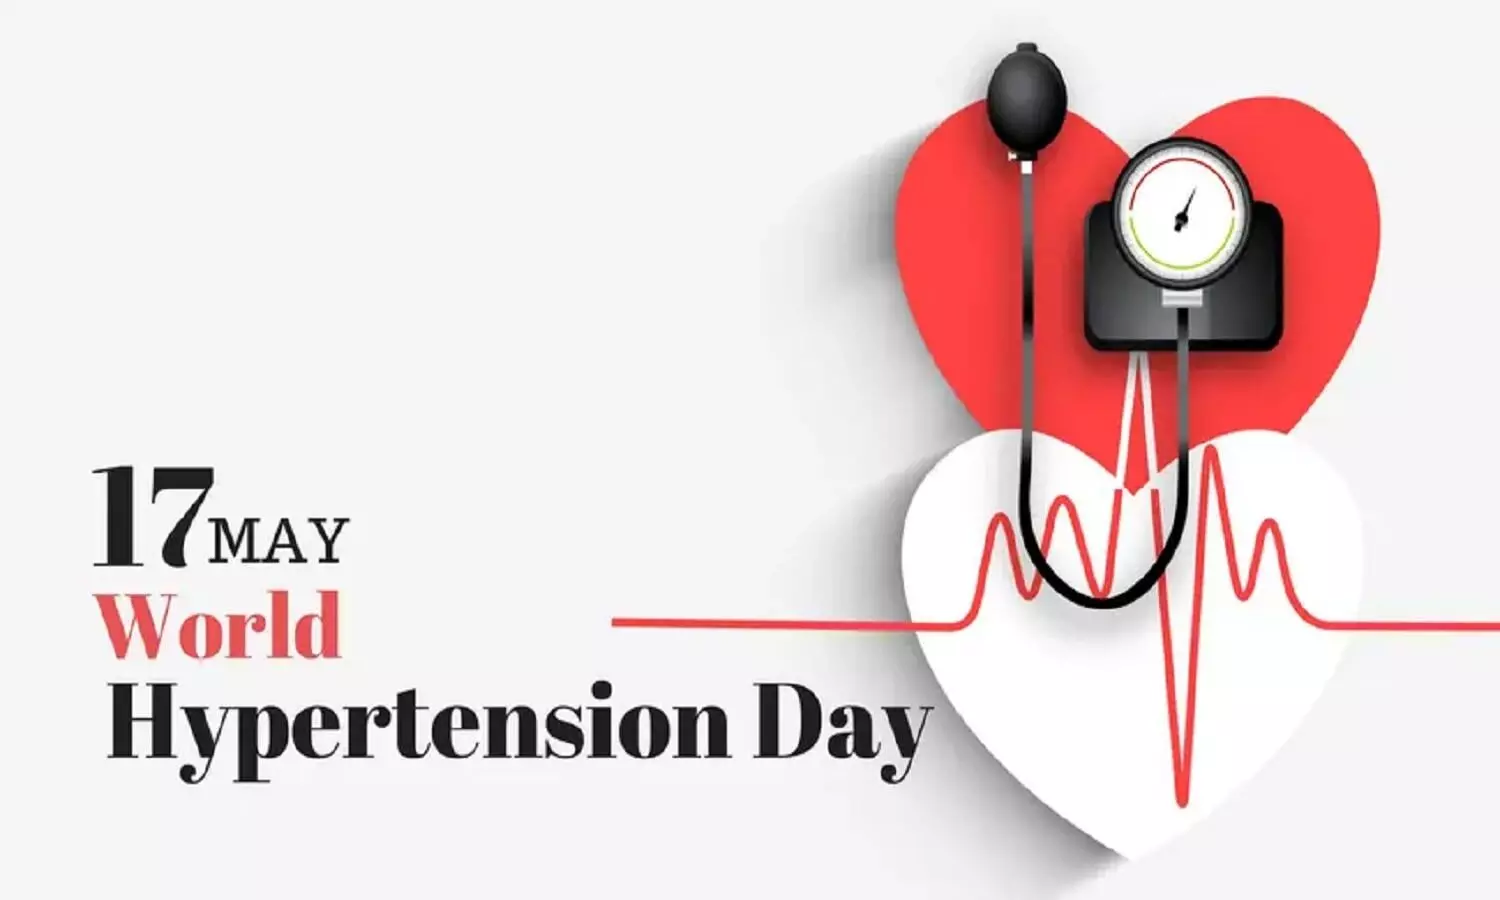 World Hypertension Day 2022: जानिए क्या है वर्ल्ड हाइपरटेंशन डे का महत्व और इस वर्ष की थीम